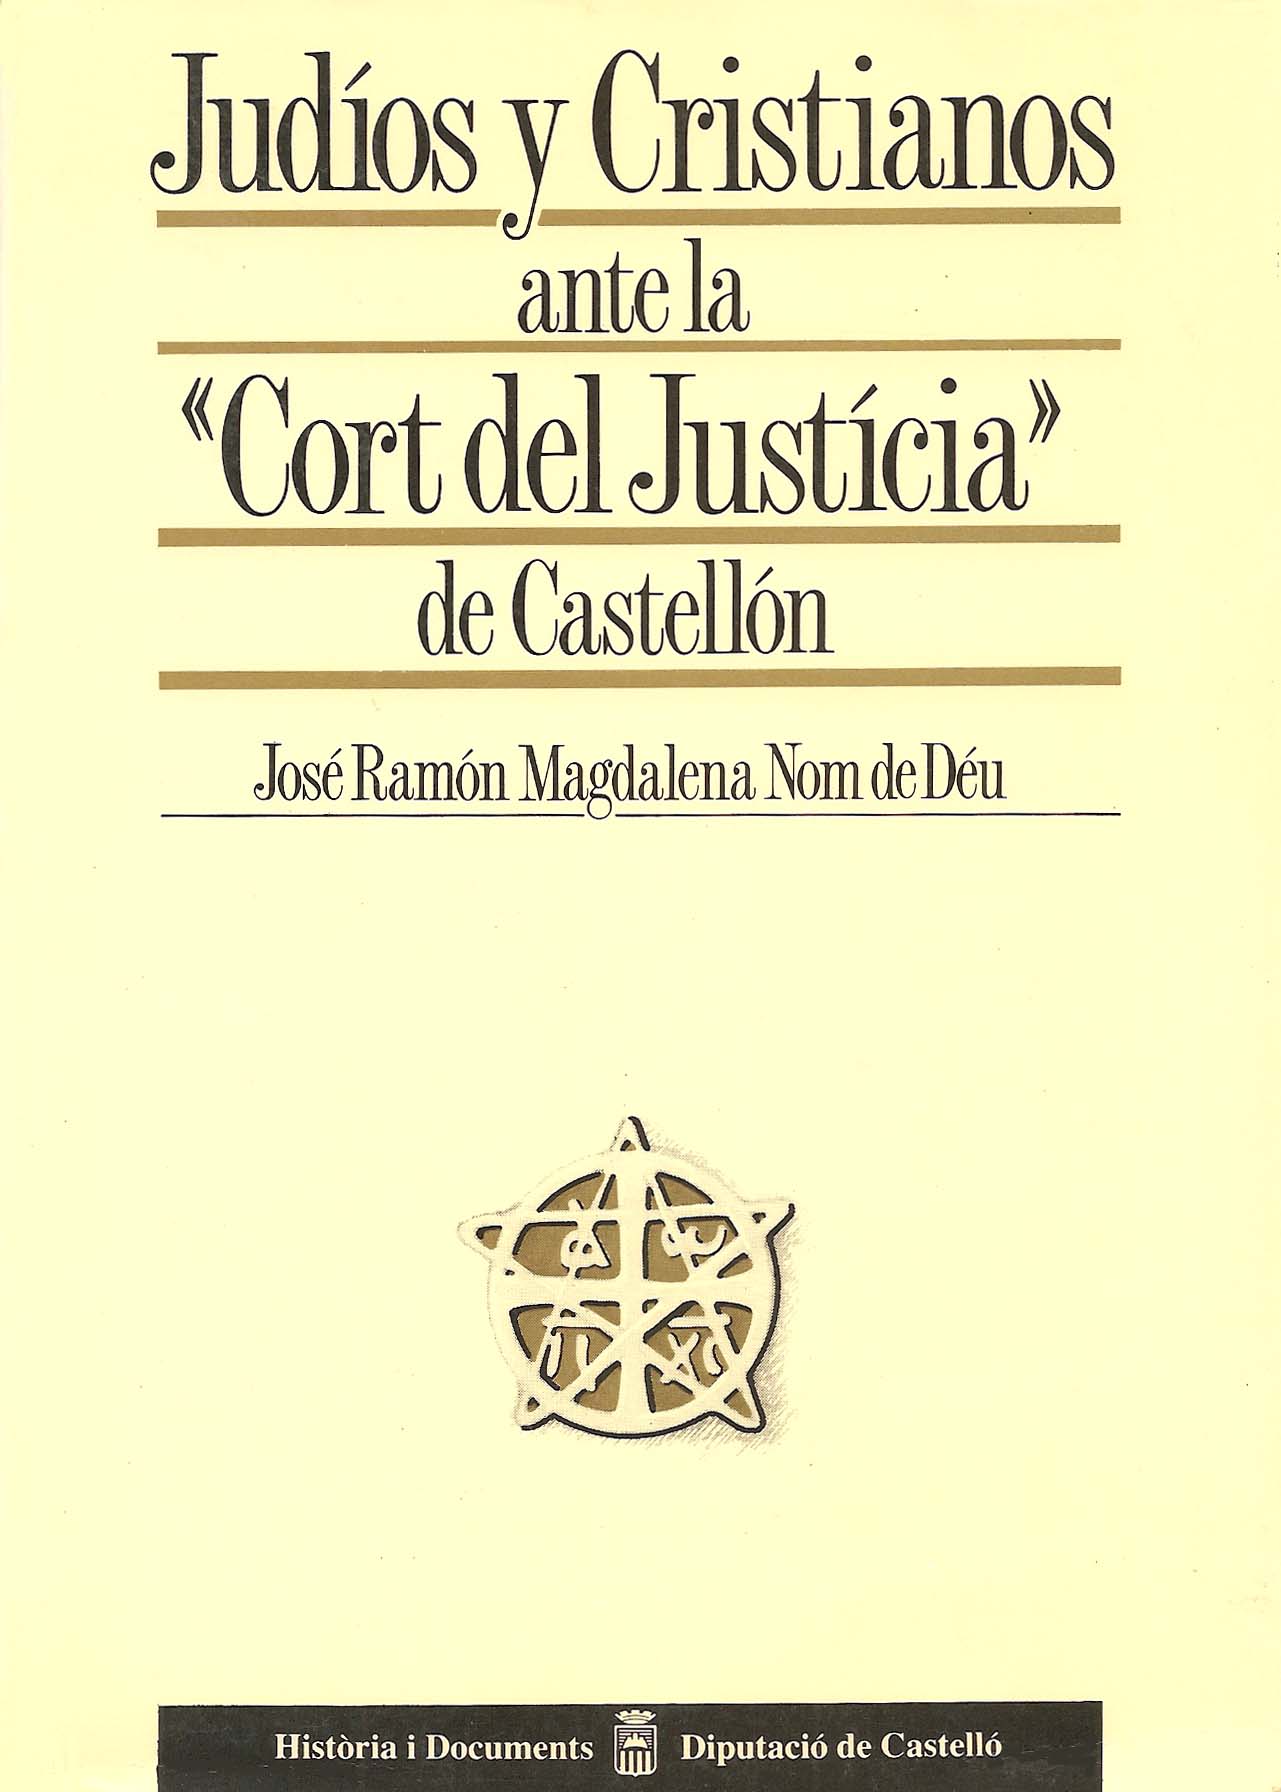 Judíos y cristianos ante la "Cort del Justicia" de Castellón